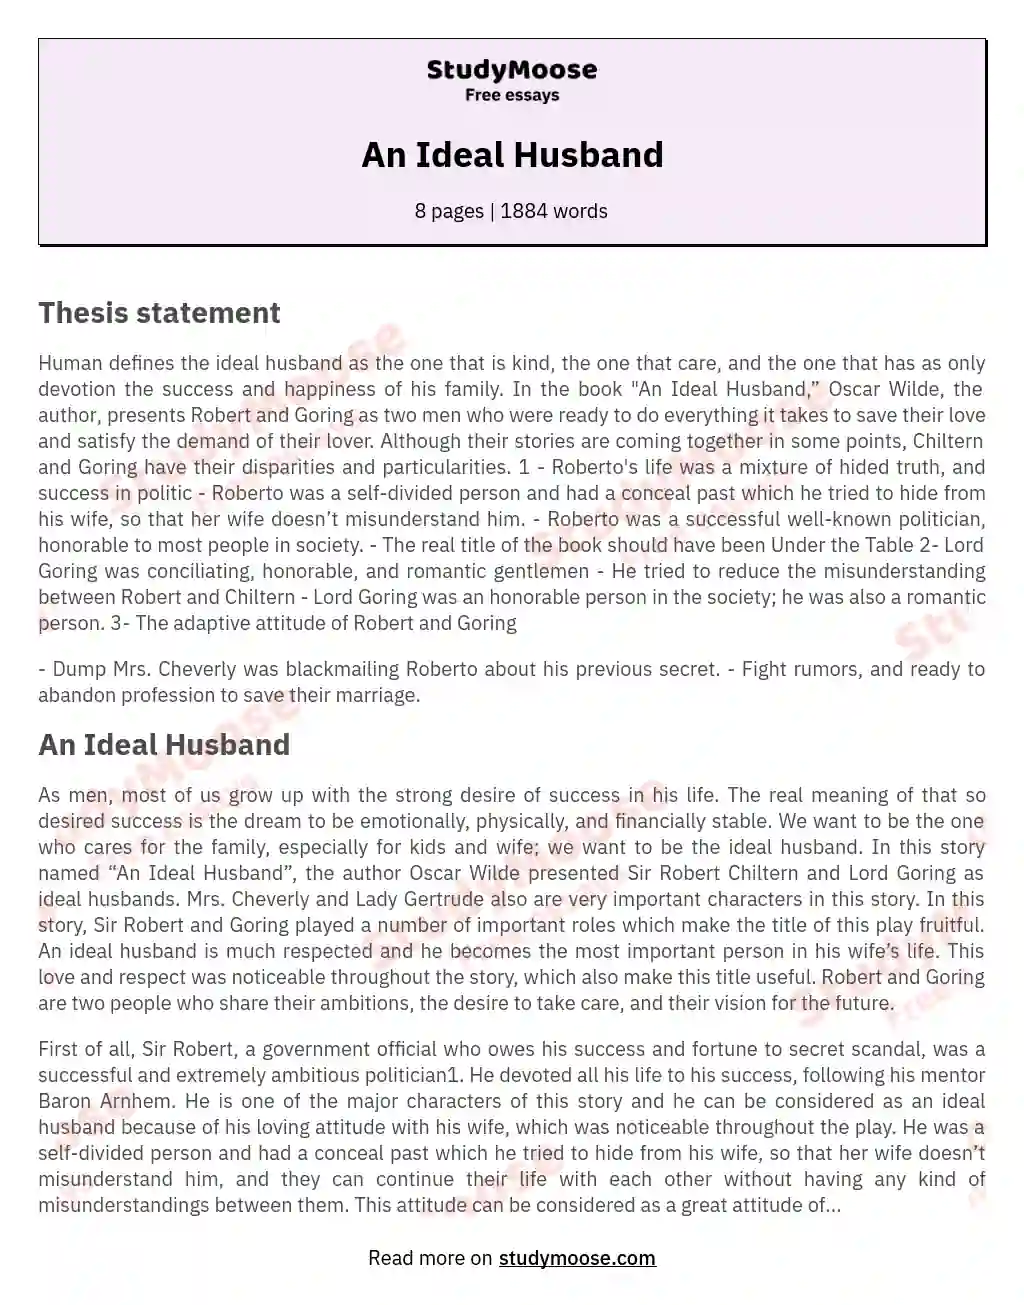 An Ideal Husband essay